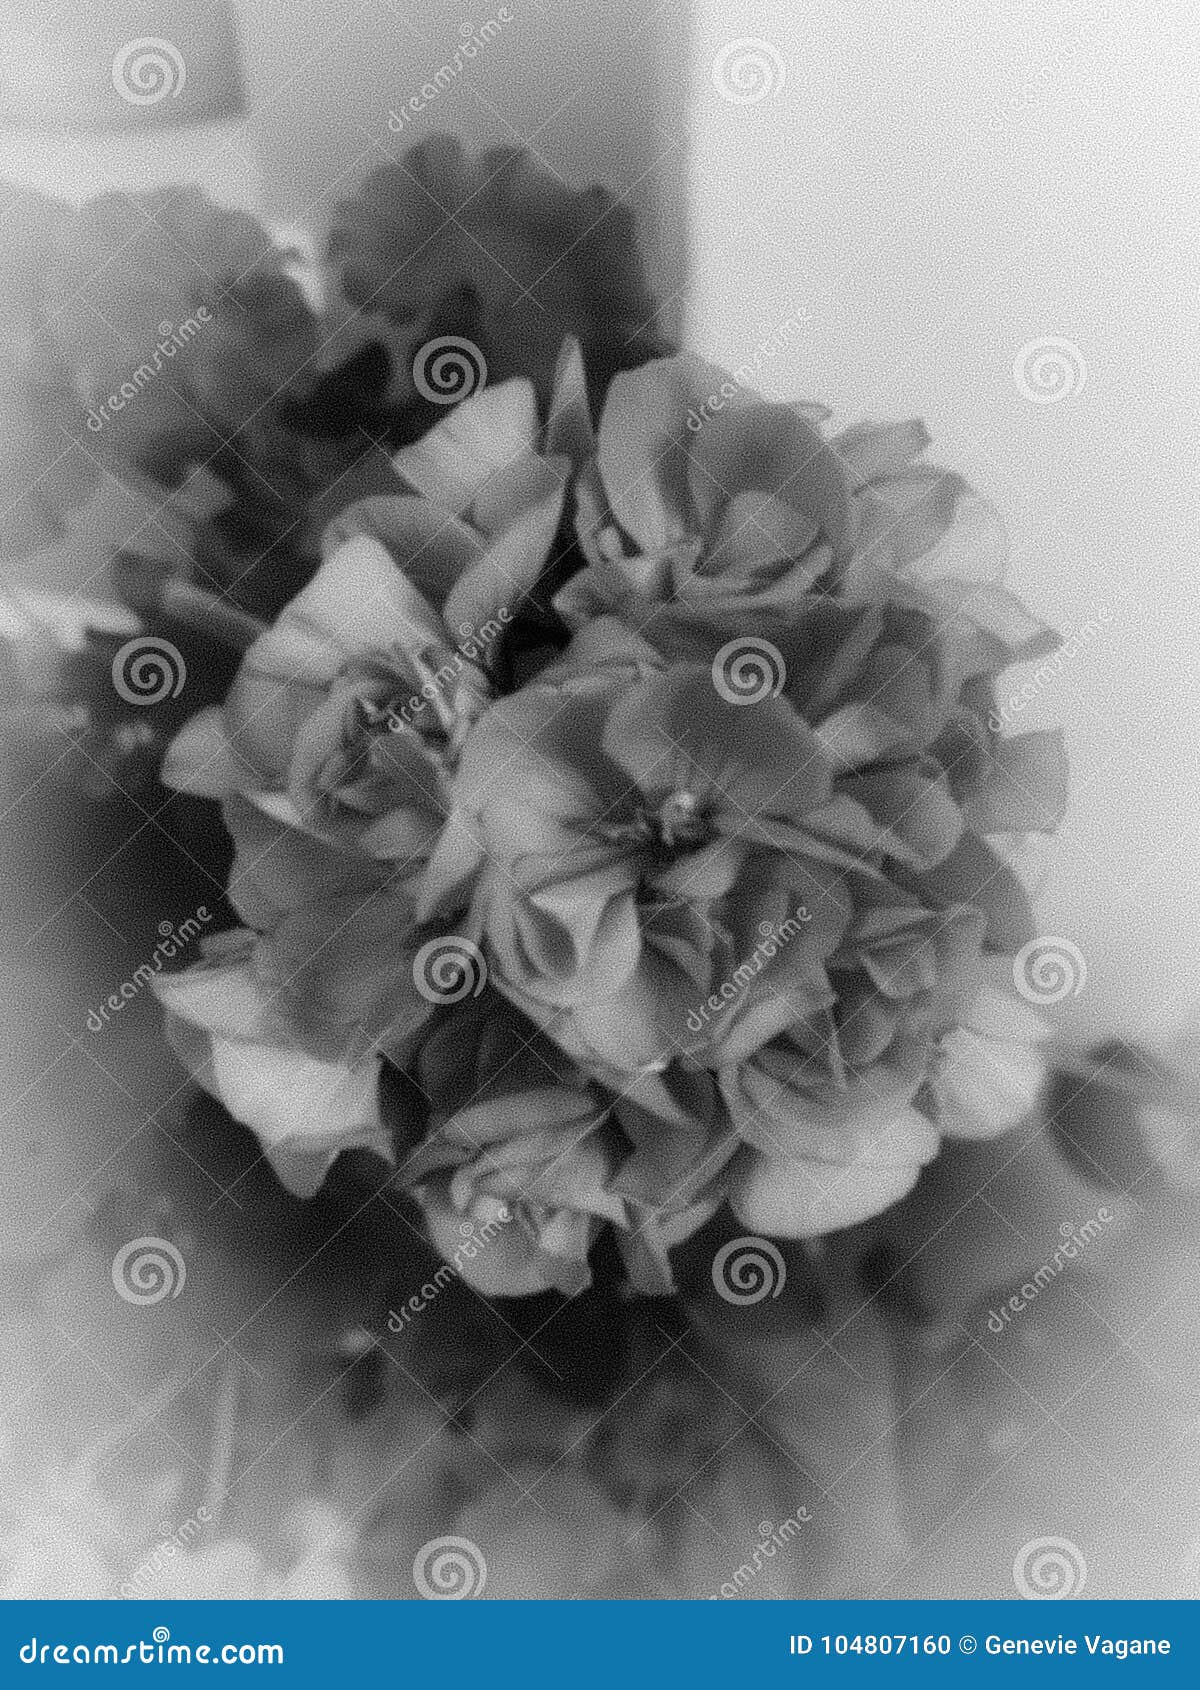 flower, blackandwhite, gray